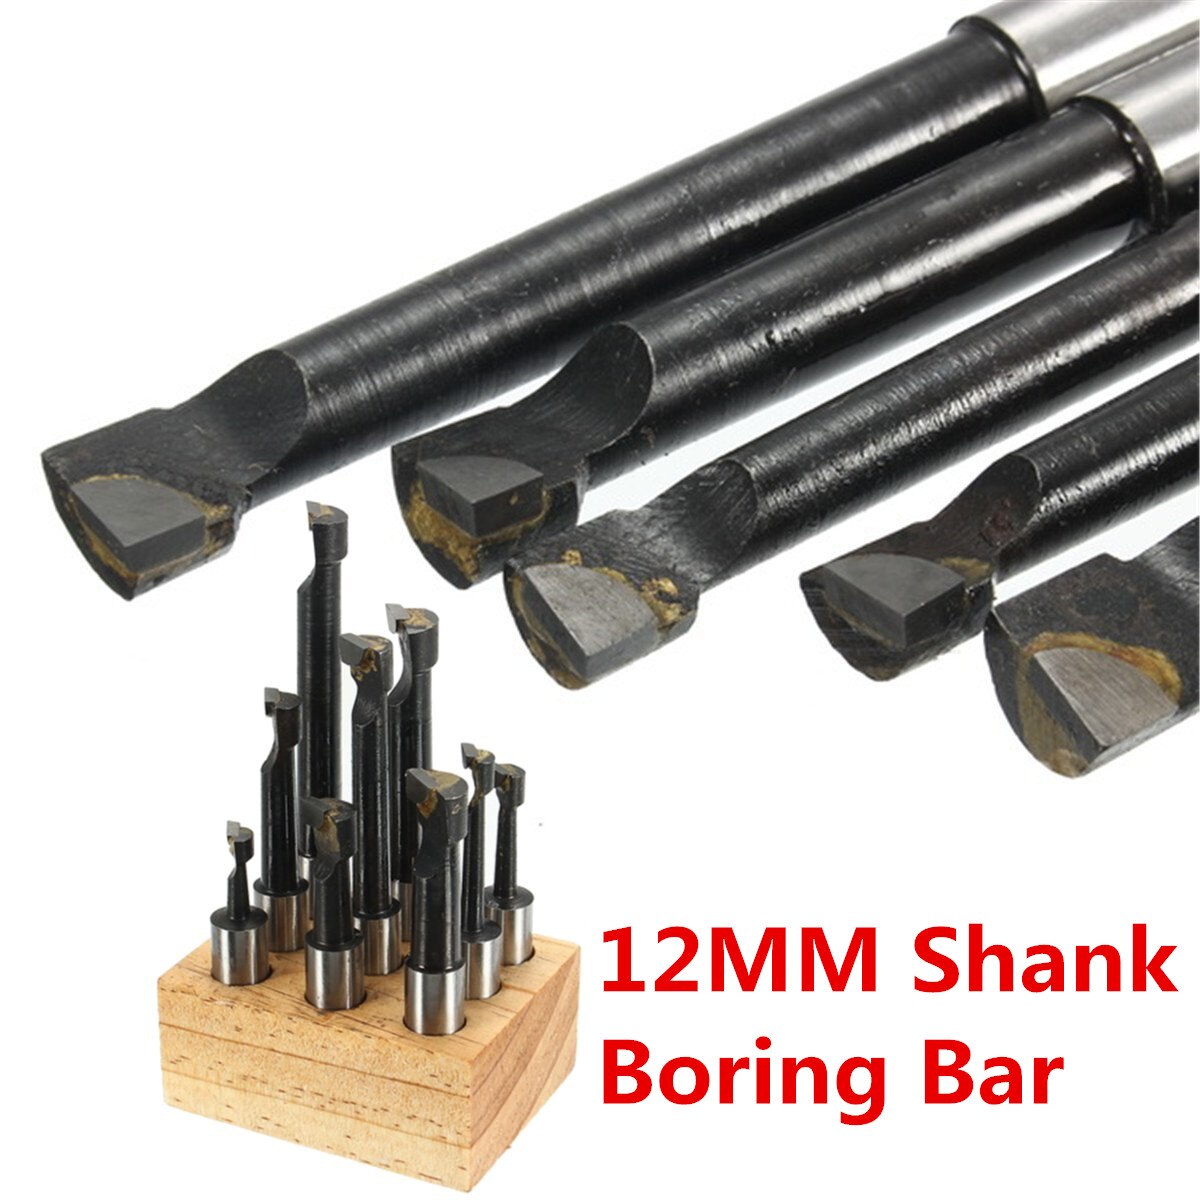 9 Stks/set 12Mm Duurzaam Schacht Kotterbaar Hardmetalen Boring Tool Voor 50Mm MT3-M12 Morse Taper Boring Bar draaibank Frezen